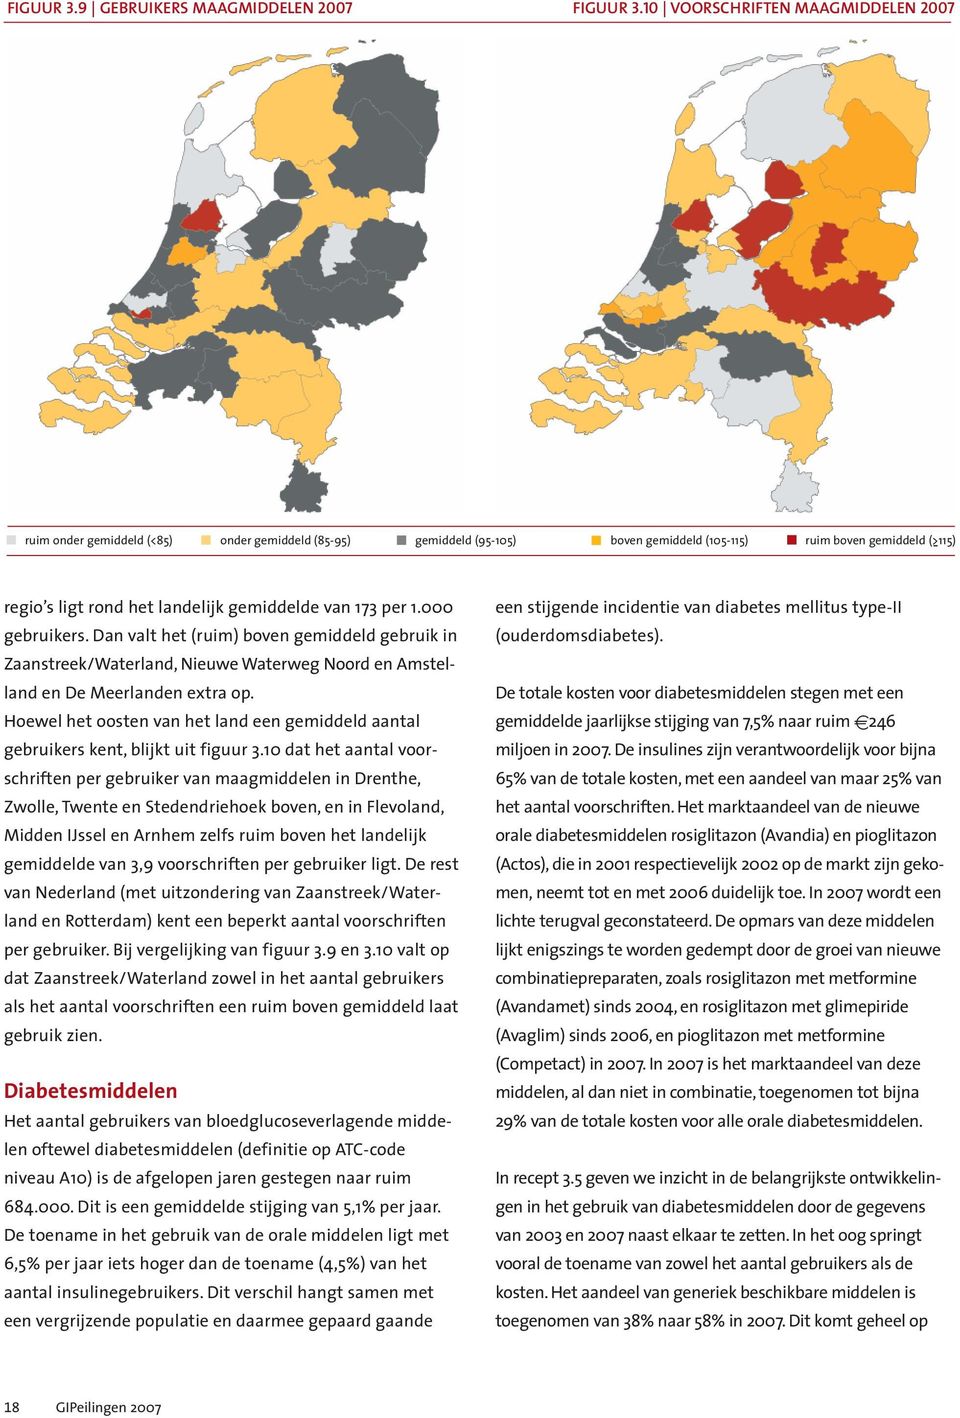 gemiddelde van 173 per 1.000 gebruikers. Dan valt het (ruim) boven gemiddeld gebruik in Zaanstreek/Waterland, Nieuwe Waterweg Noord en Amstelland en De Meerlanden extra op.